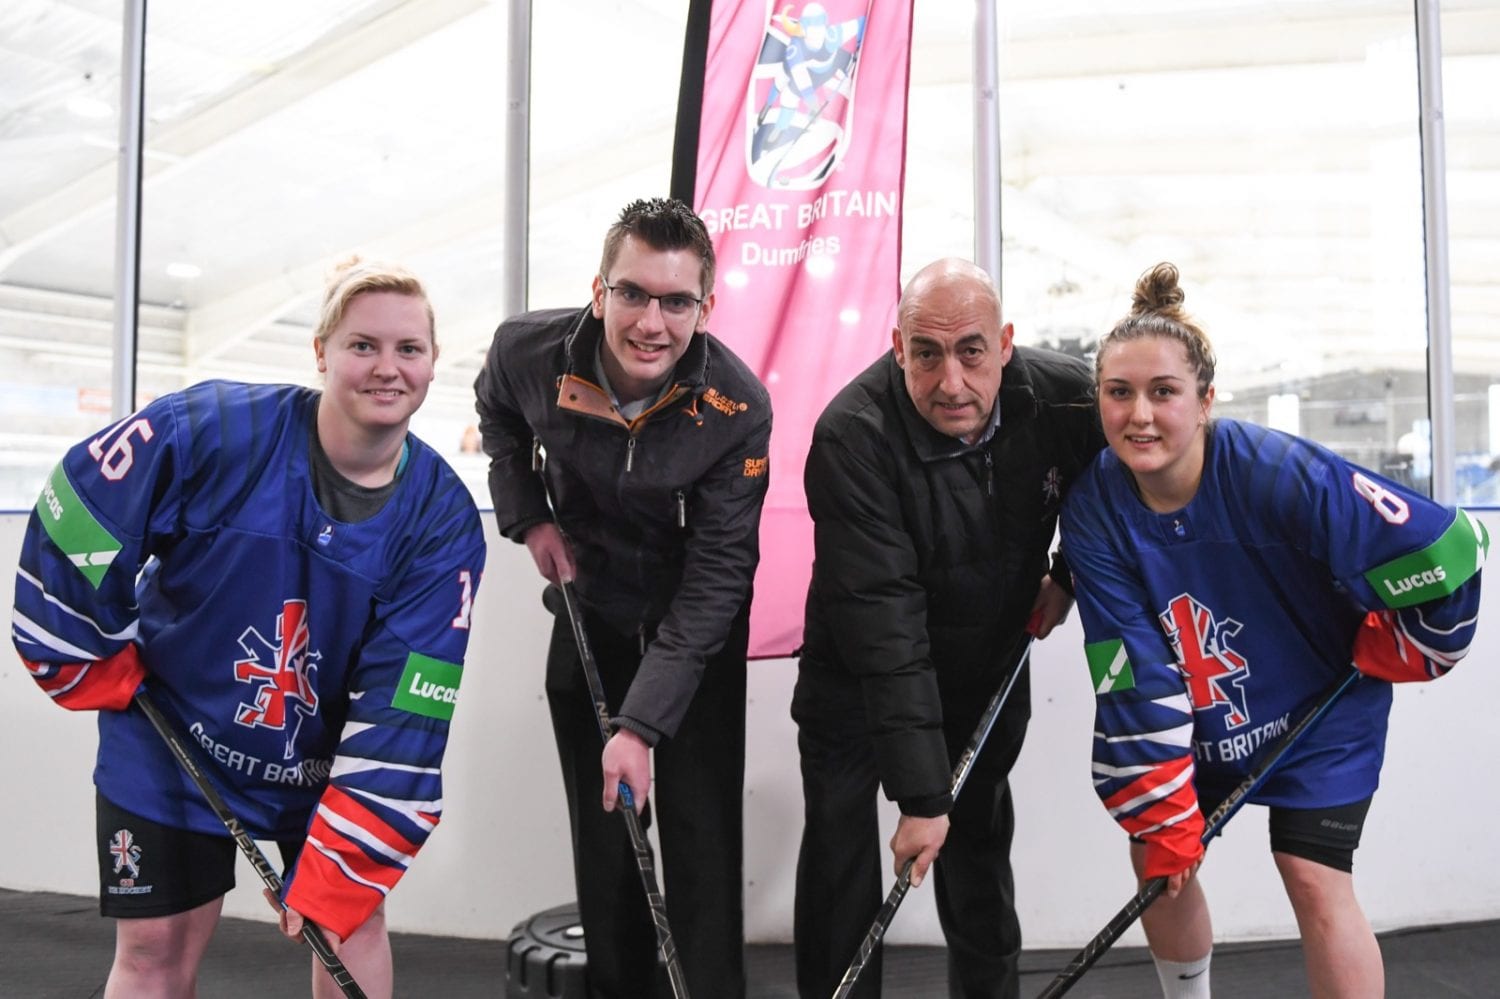 Dumfries Womens World Championship Launch 2019, British Ice Hockey